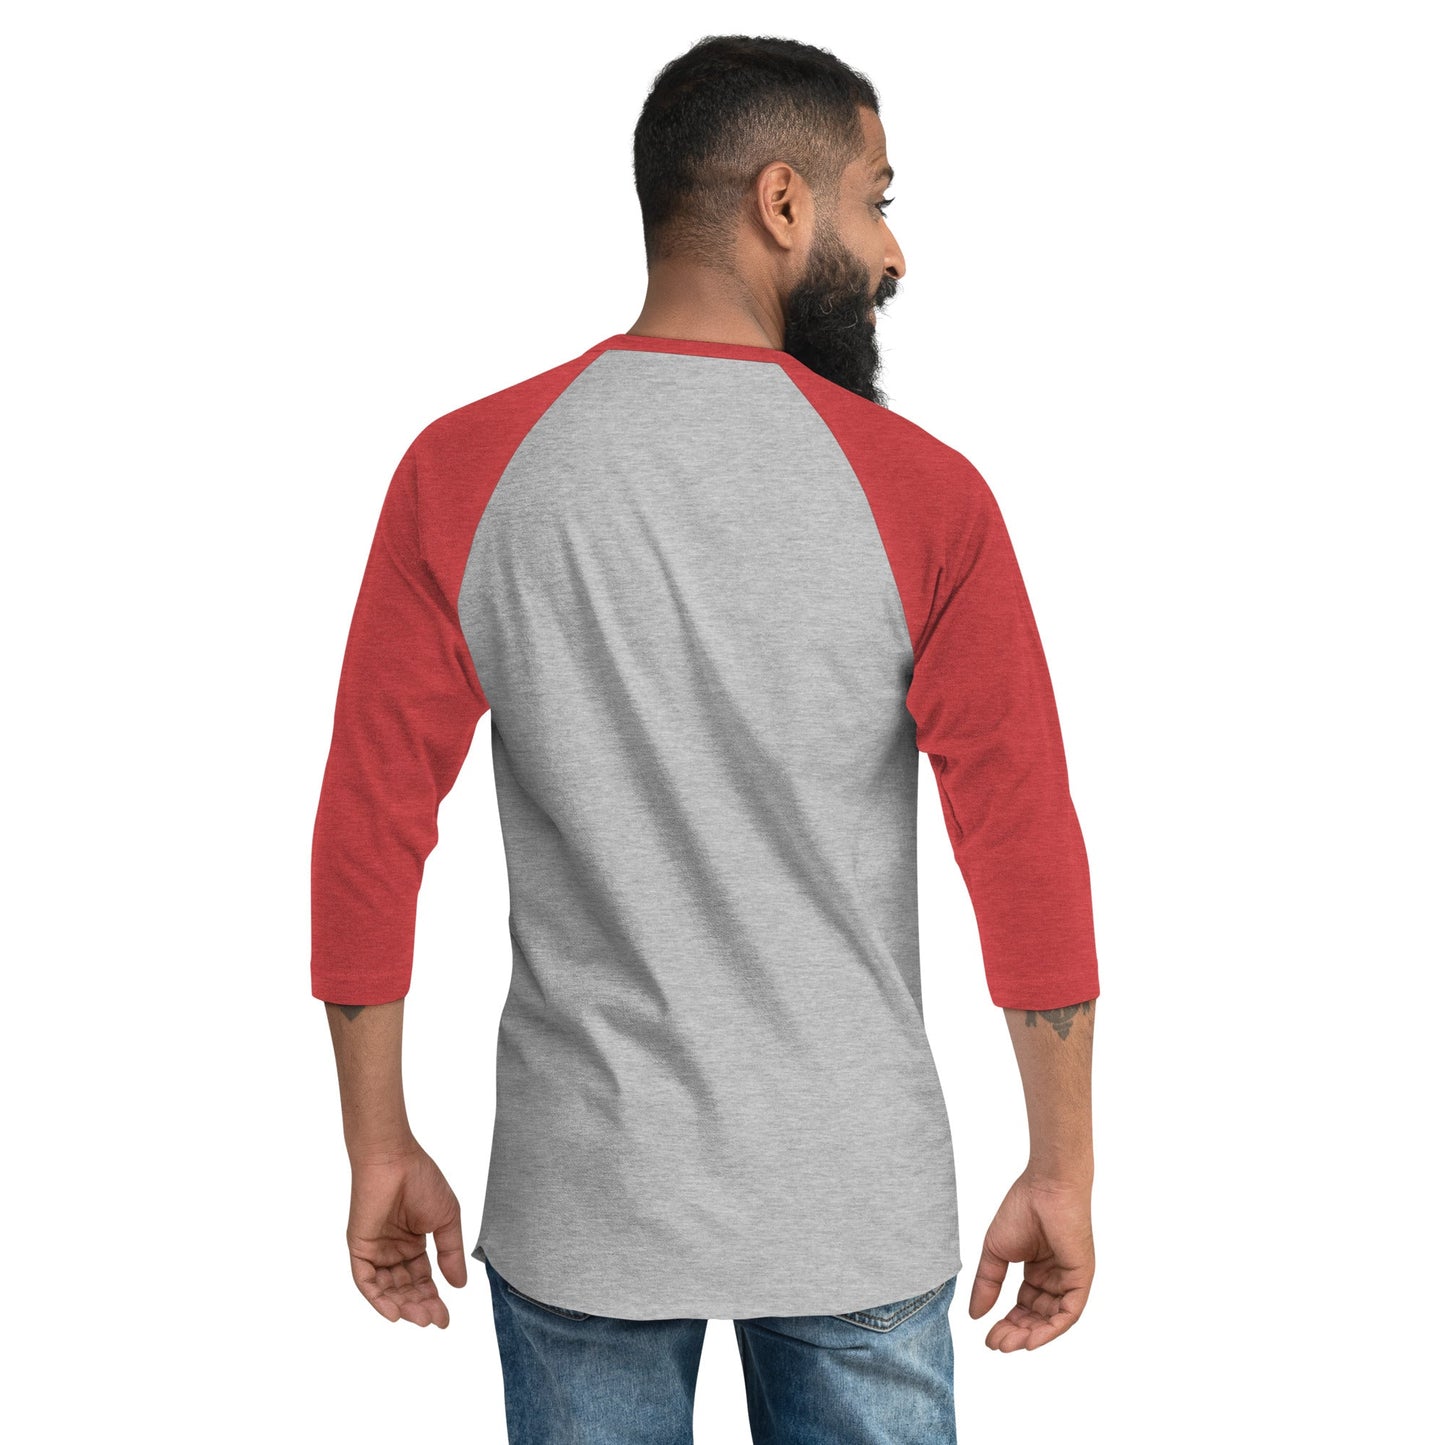 FAUKIT! - Solving problems since 0000- 3/4 sleeve raglan shirt - Albasat Designs